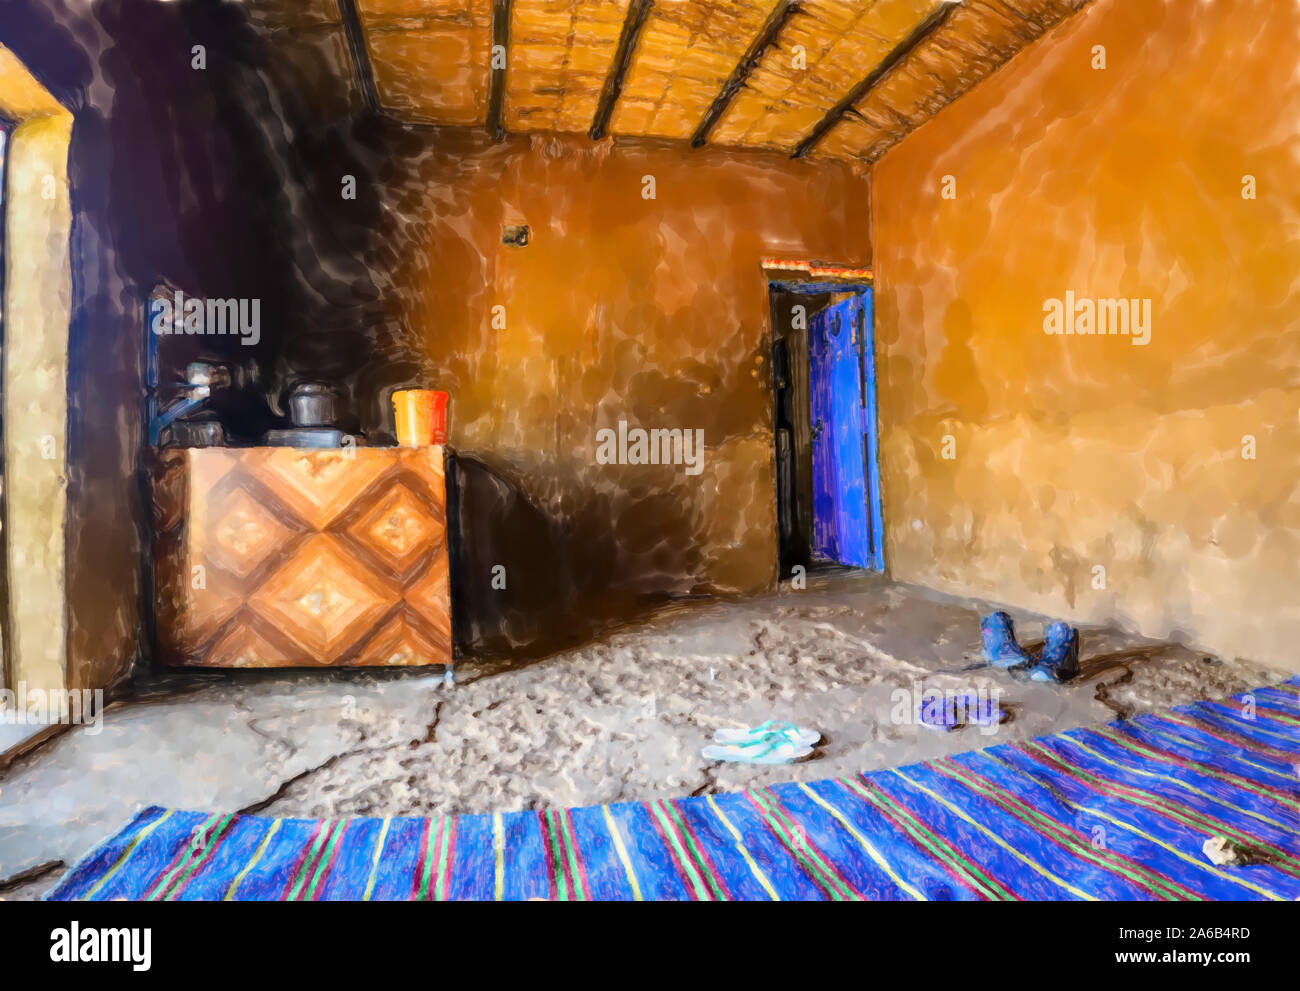 Aquarelle illustration : à l'intérieur d'une halte dans le désert du Soudan avec un tapis bleu et une cuisinière où la nourriture, thé et café sont préparés. Banque D'Images